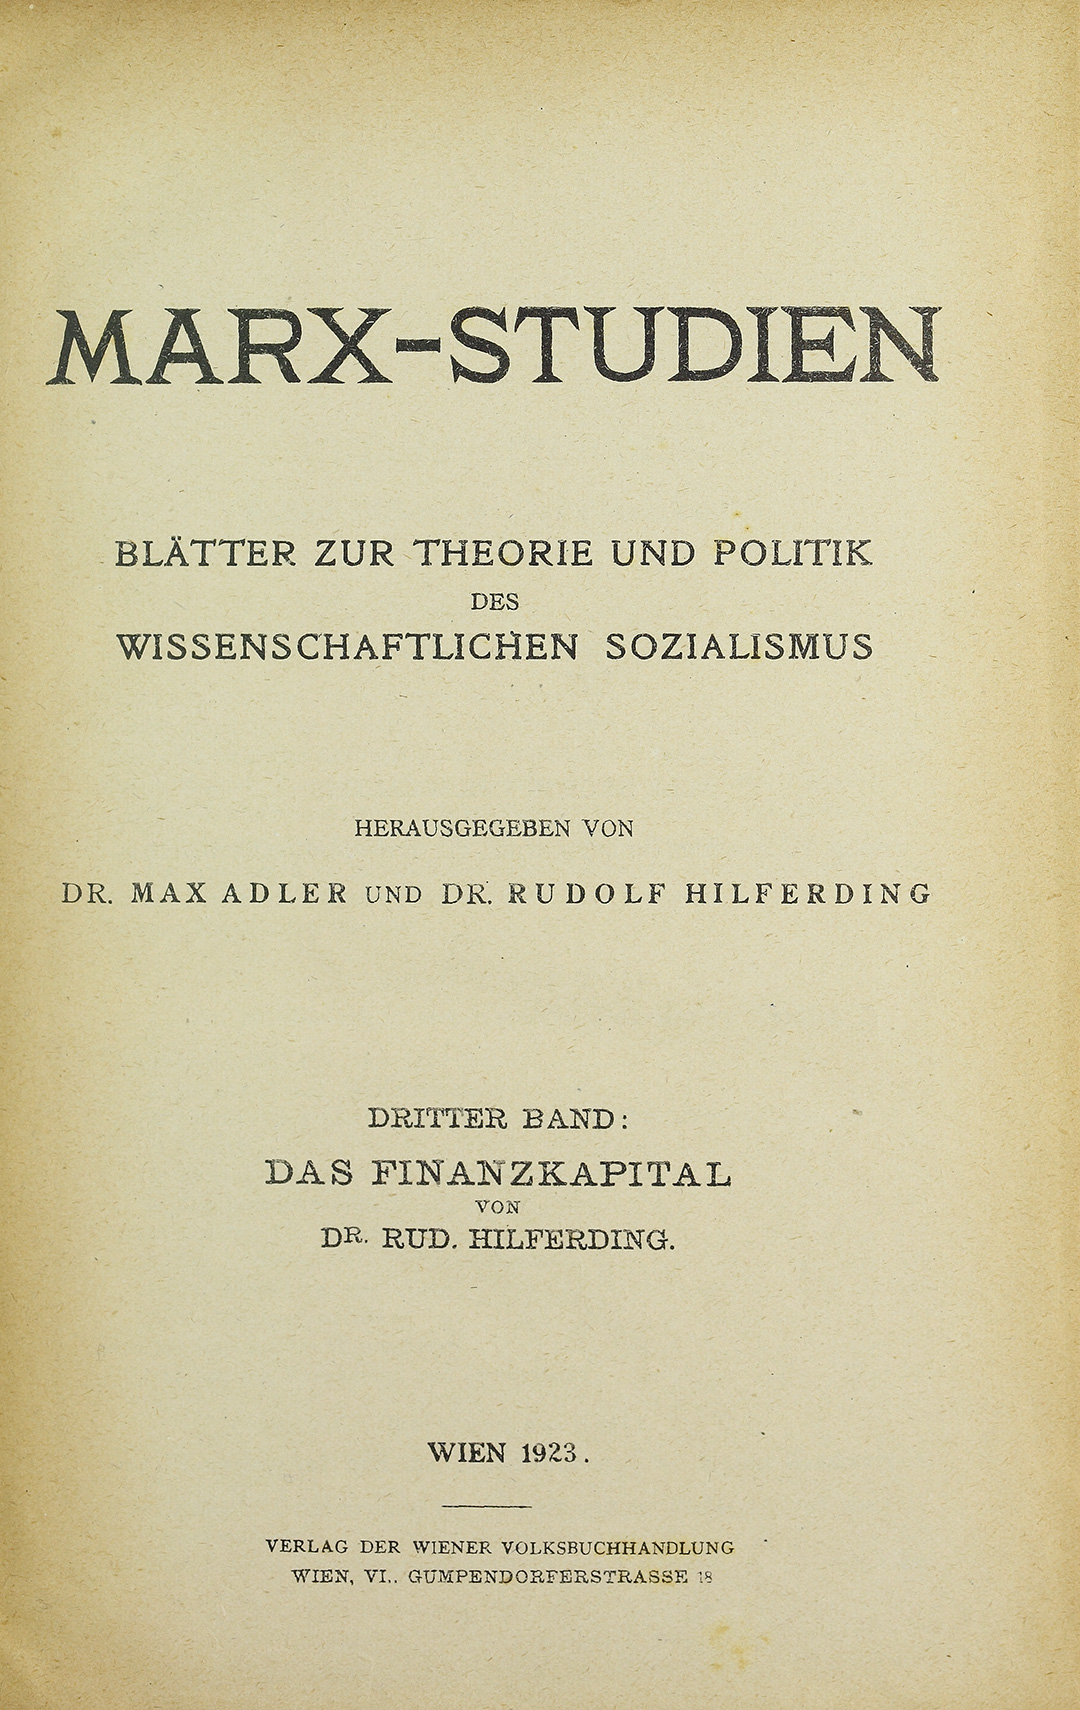 Das Titelblatt des Bandes "Das Finanzkapital" von Dr. Rudolf Hilferding aus der Reihe der "Blätter zur Theorie und Politik des wissenschaftlichen Sozialismus" aus dem Jahr 1923